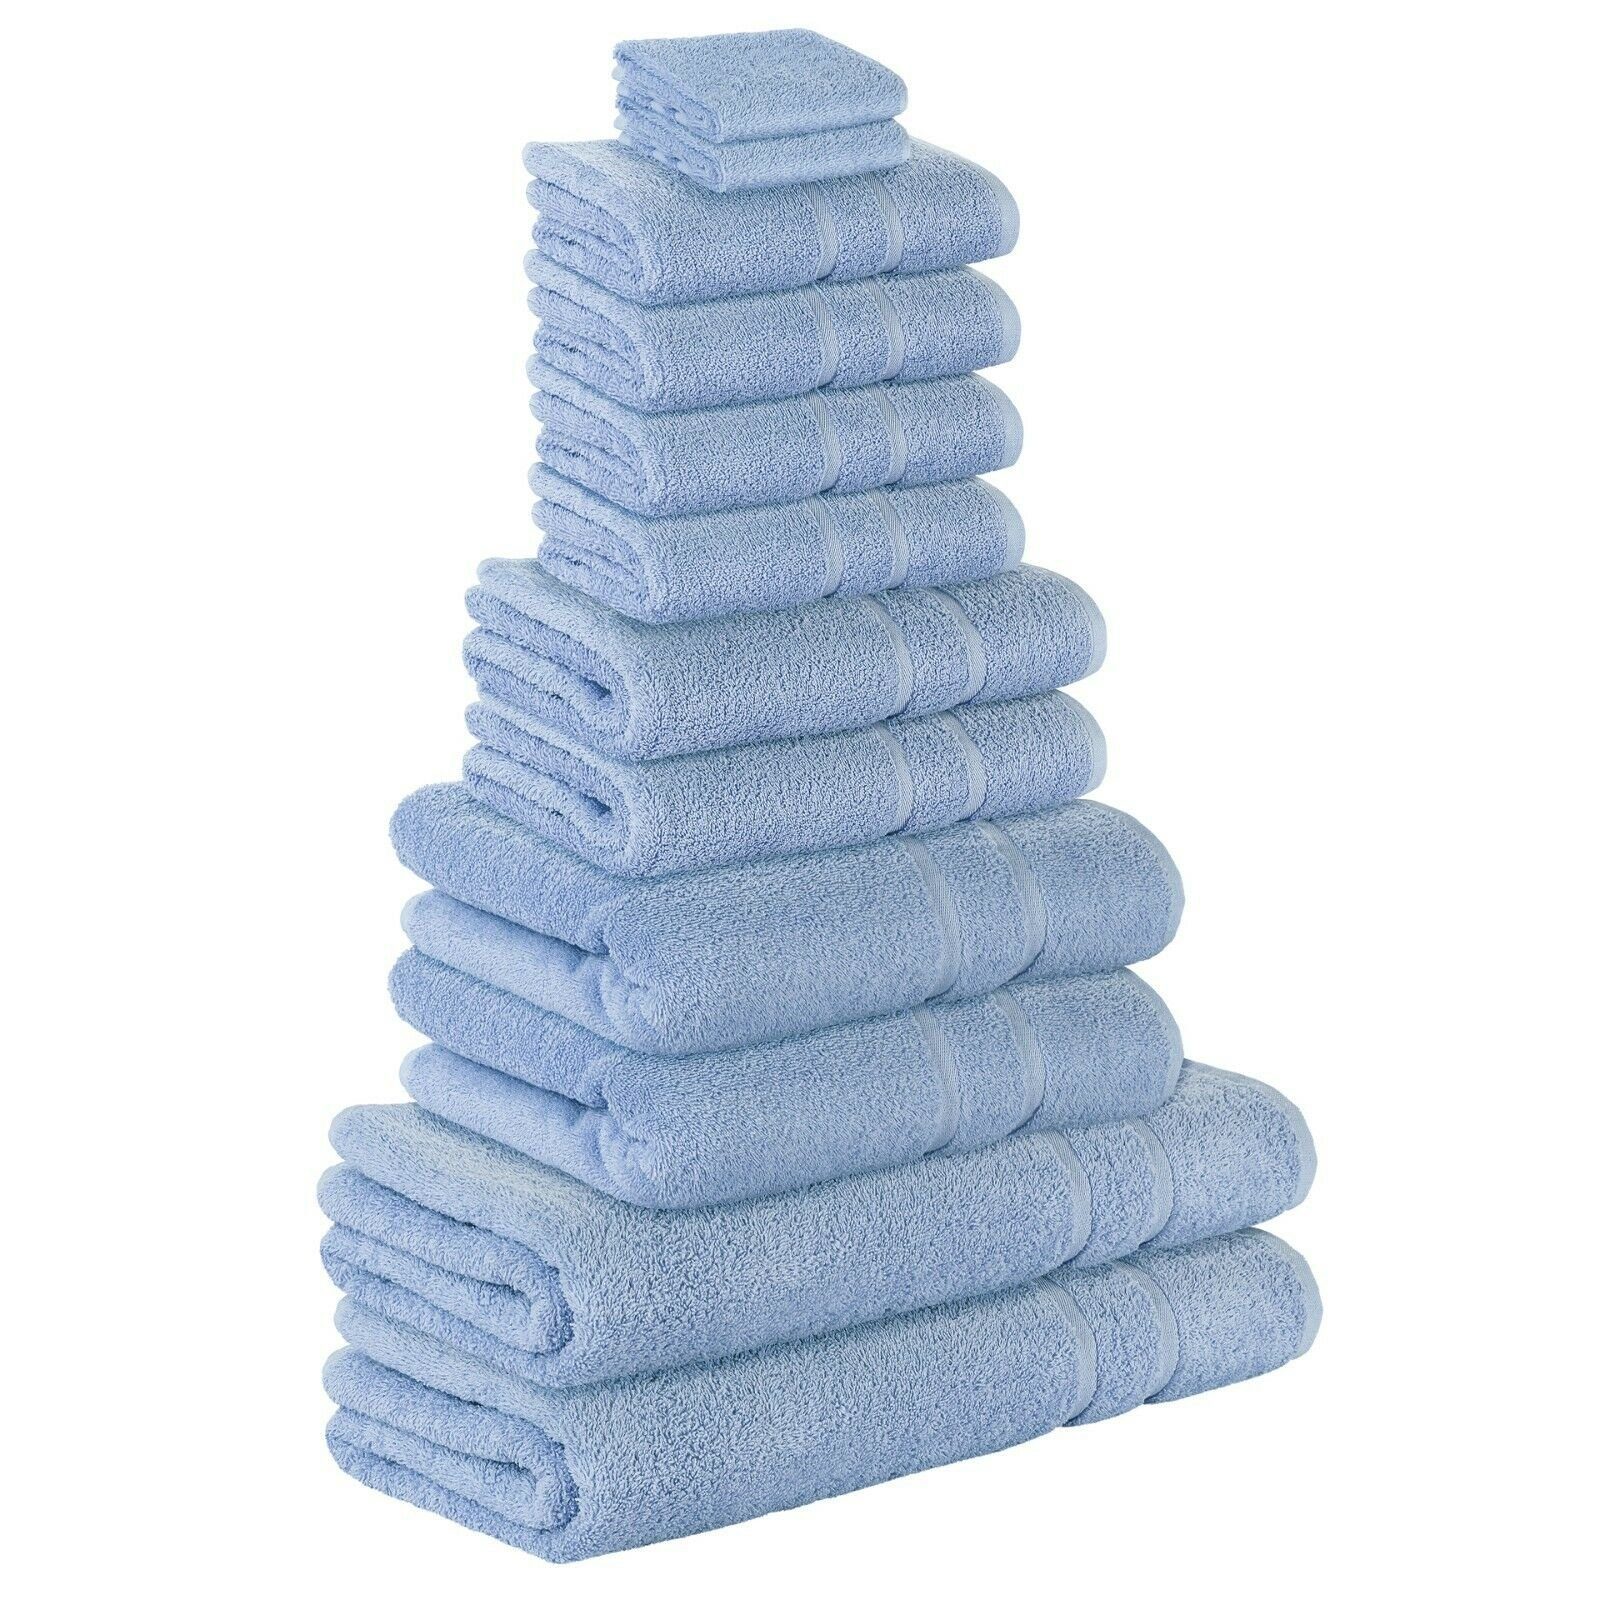 StickandShine Handtuch Set 4x Gästehandtuch 2x Handtücher 4x Duschtücher 2x Badetuch als SET in verschiedenen Farben (12 Teilig) 100% Baumwolle 500 GSM Frottee 12er Handtuch Pack, (Spar-SET) Hellblau